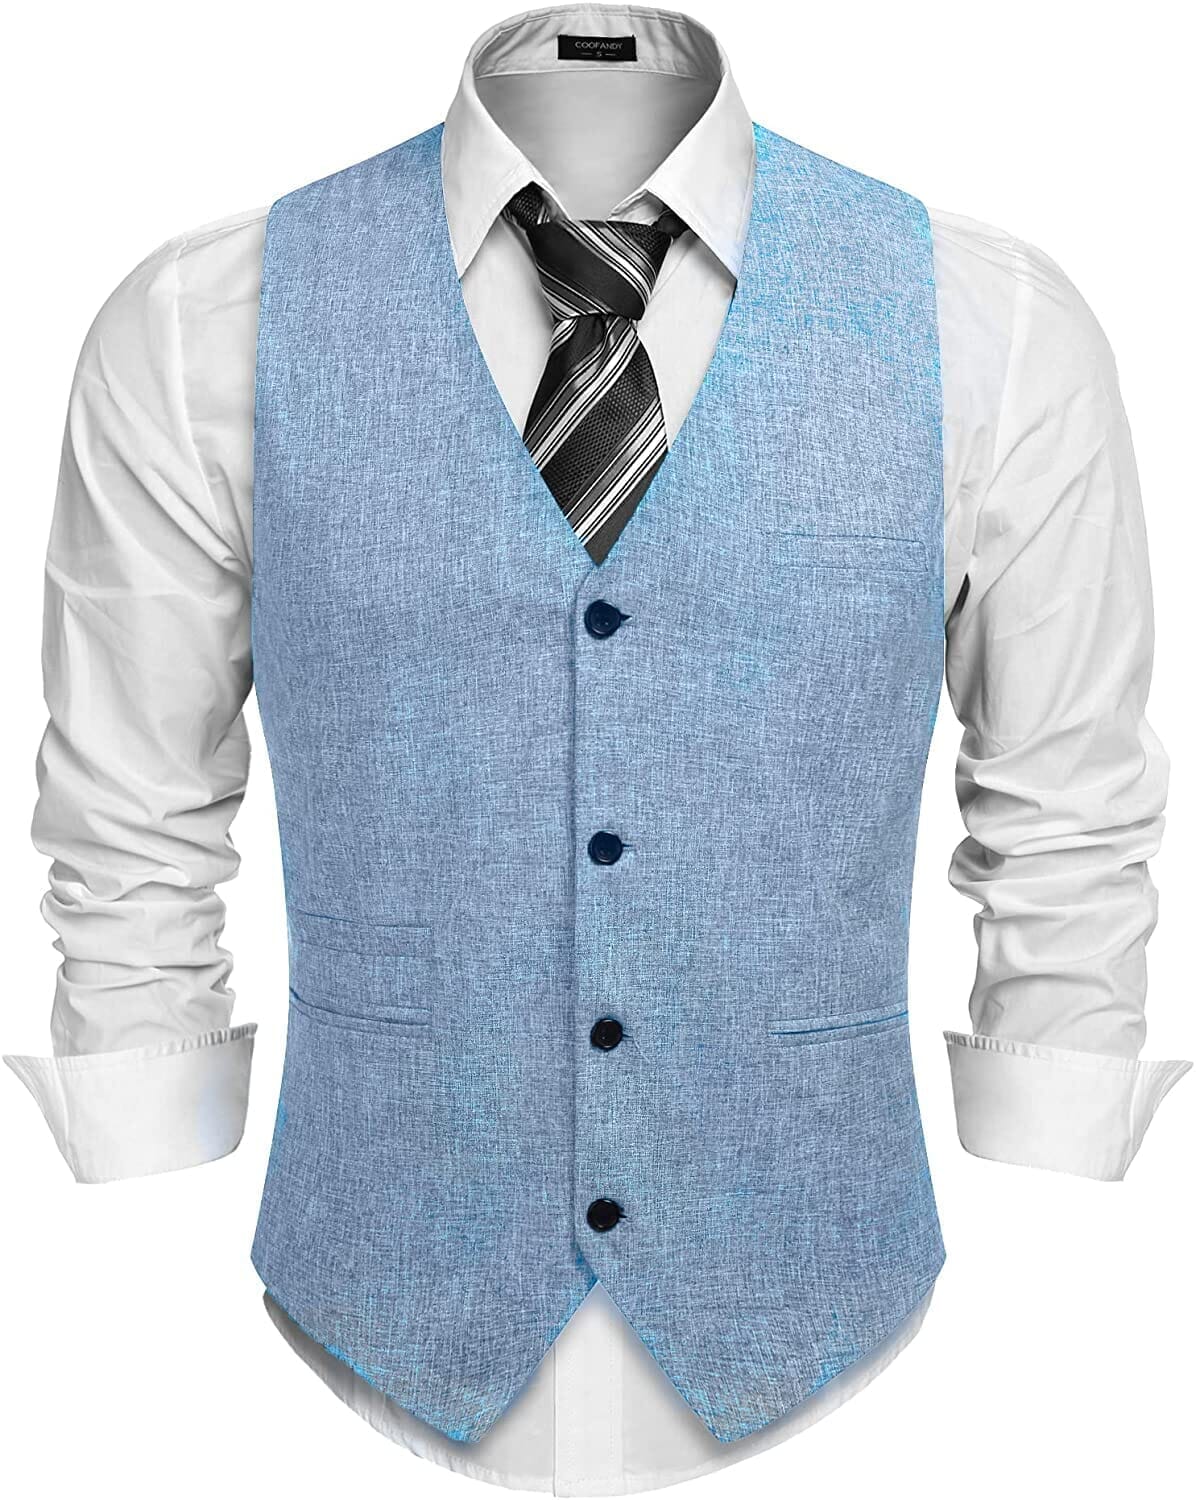 Coofandy Waistcoat Business Vests (US Only) Vest coofandy Sky Blue S 